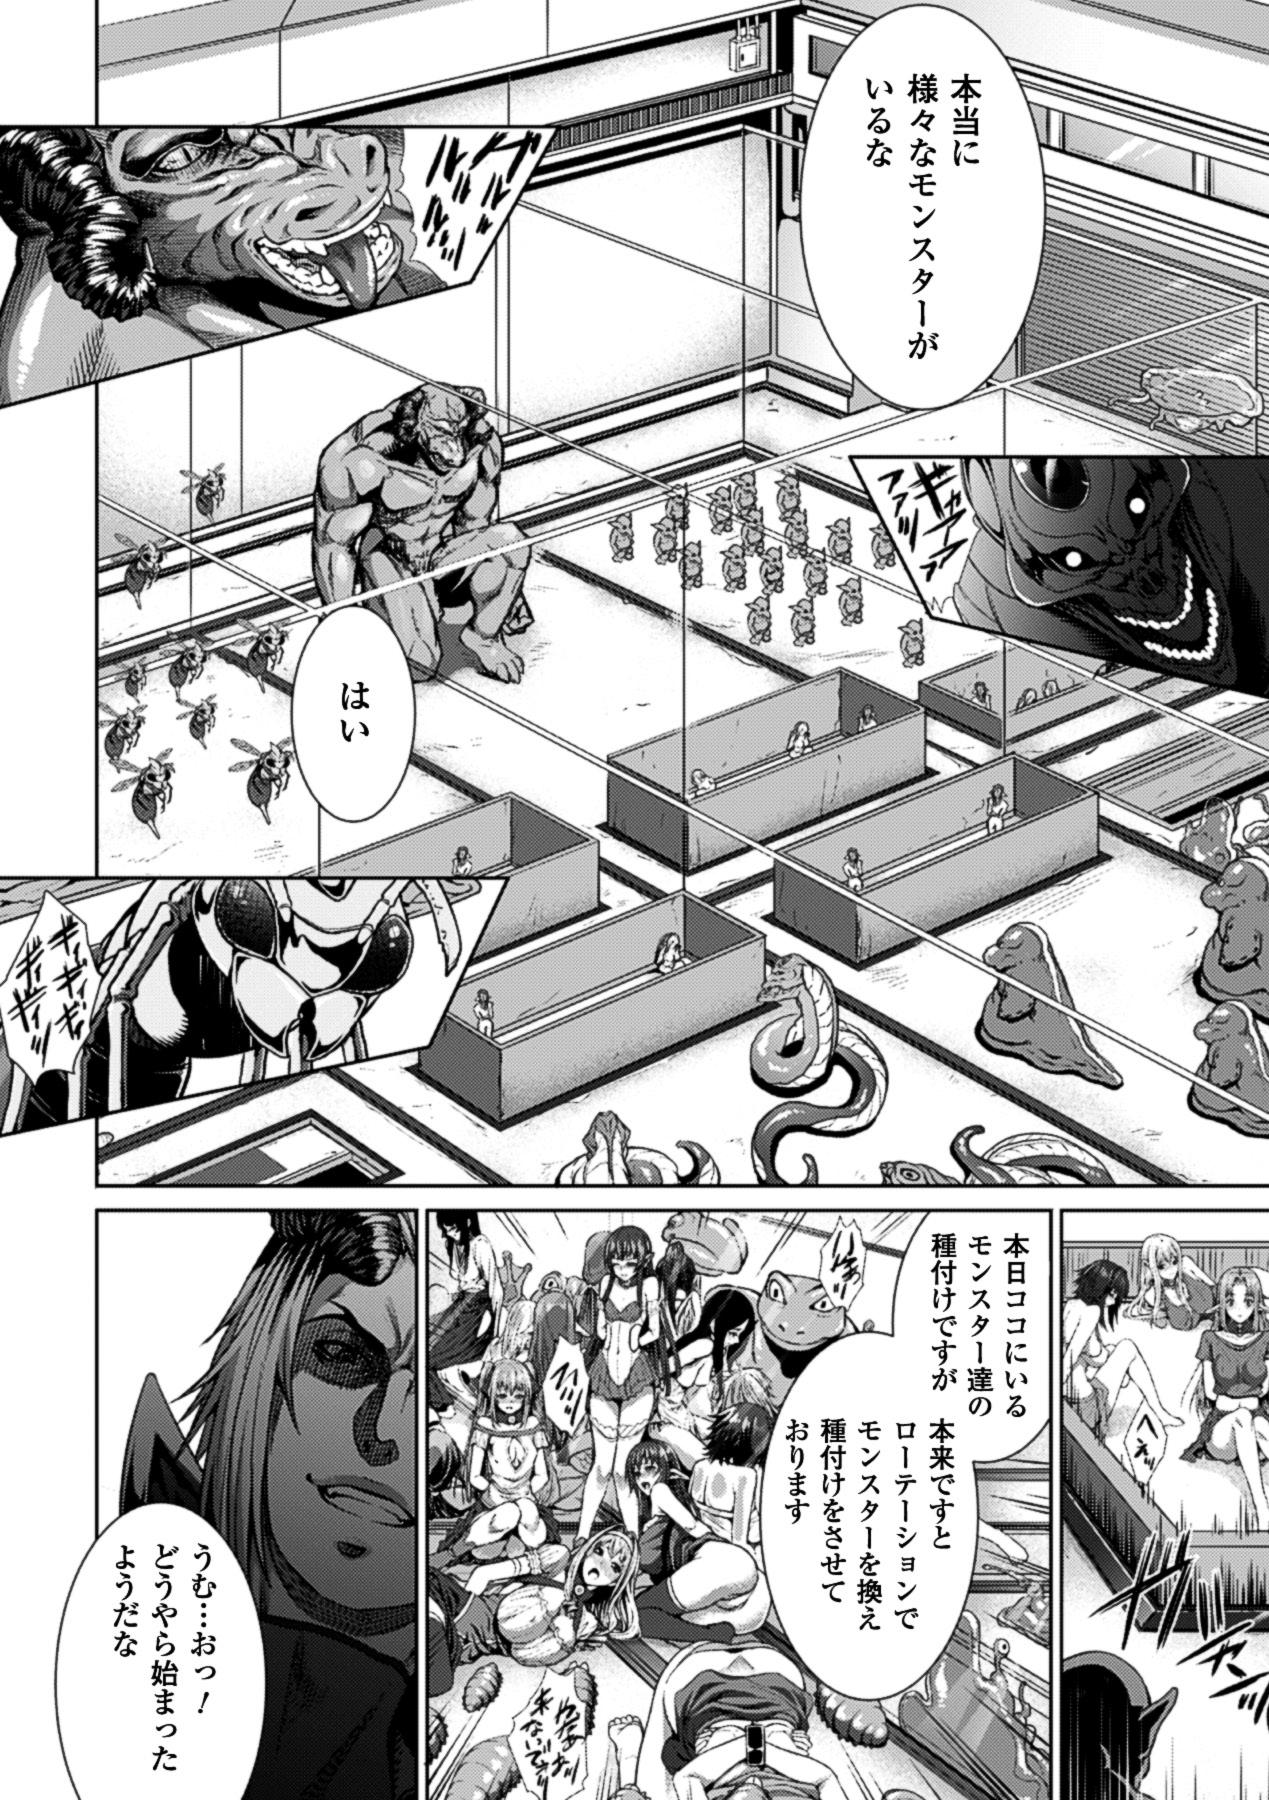 Bessatsu Comic Unreal Ningen Bokujou Hen Vol.1 10